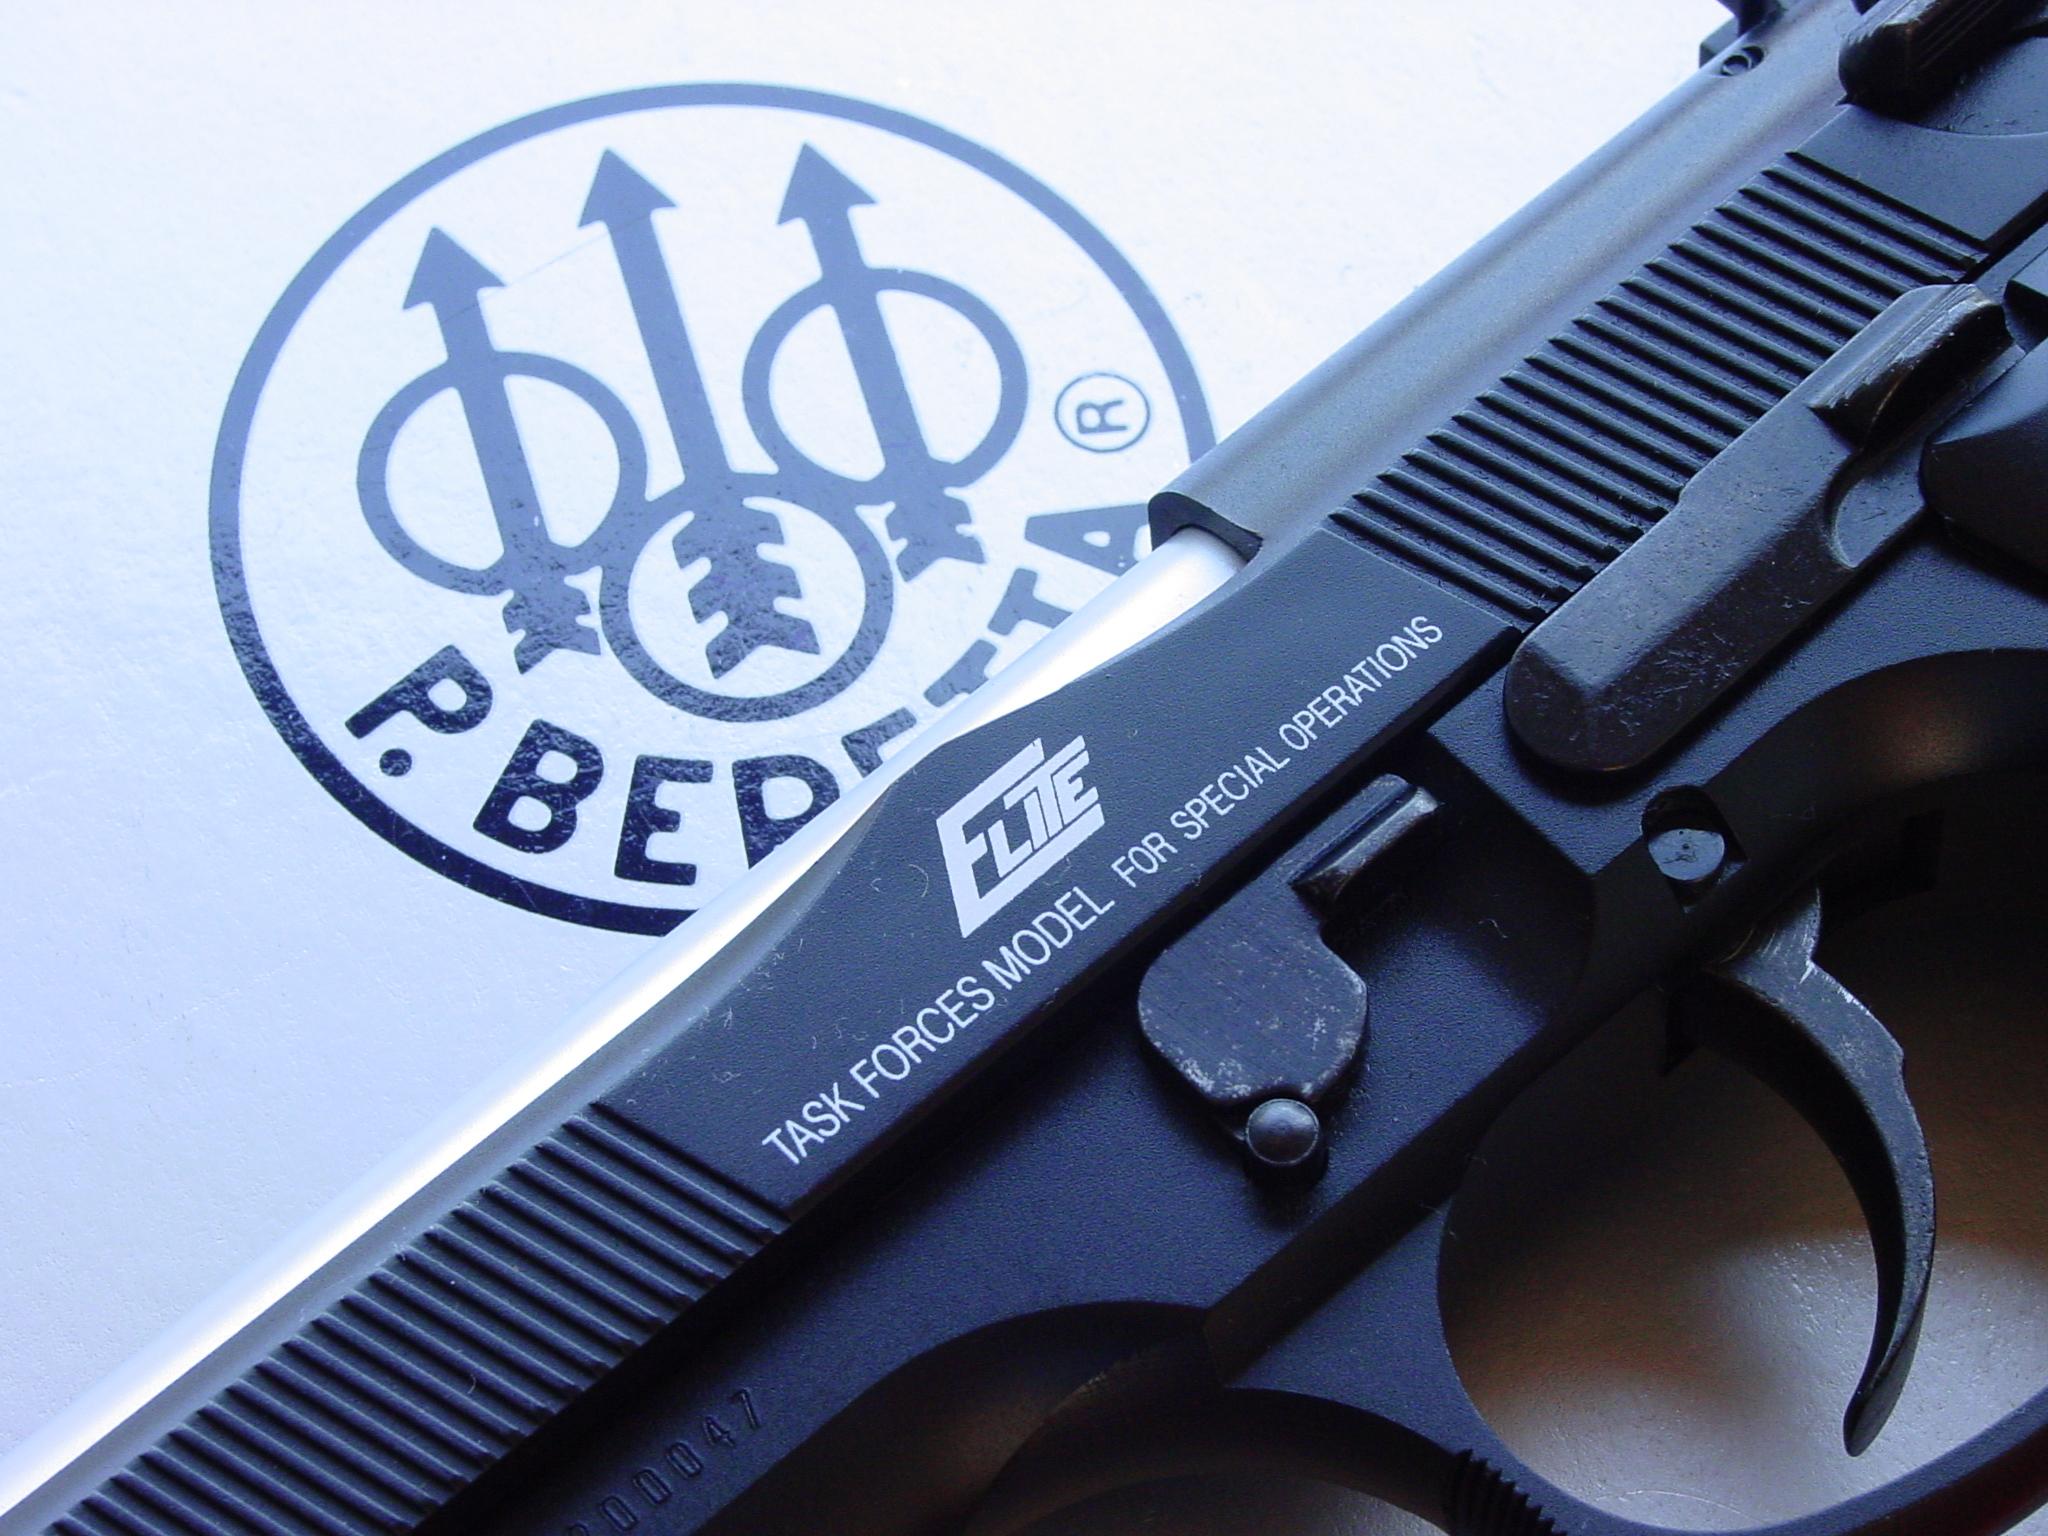 yadav logo wallpaper,gun,firearm,trigger,airsoft gun,airsoft